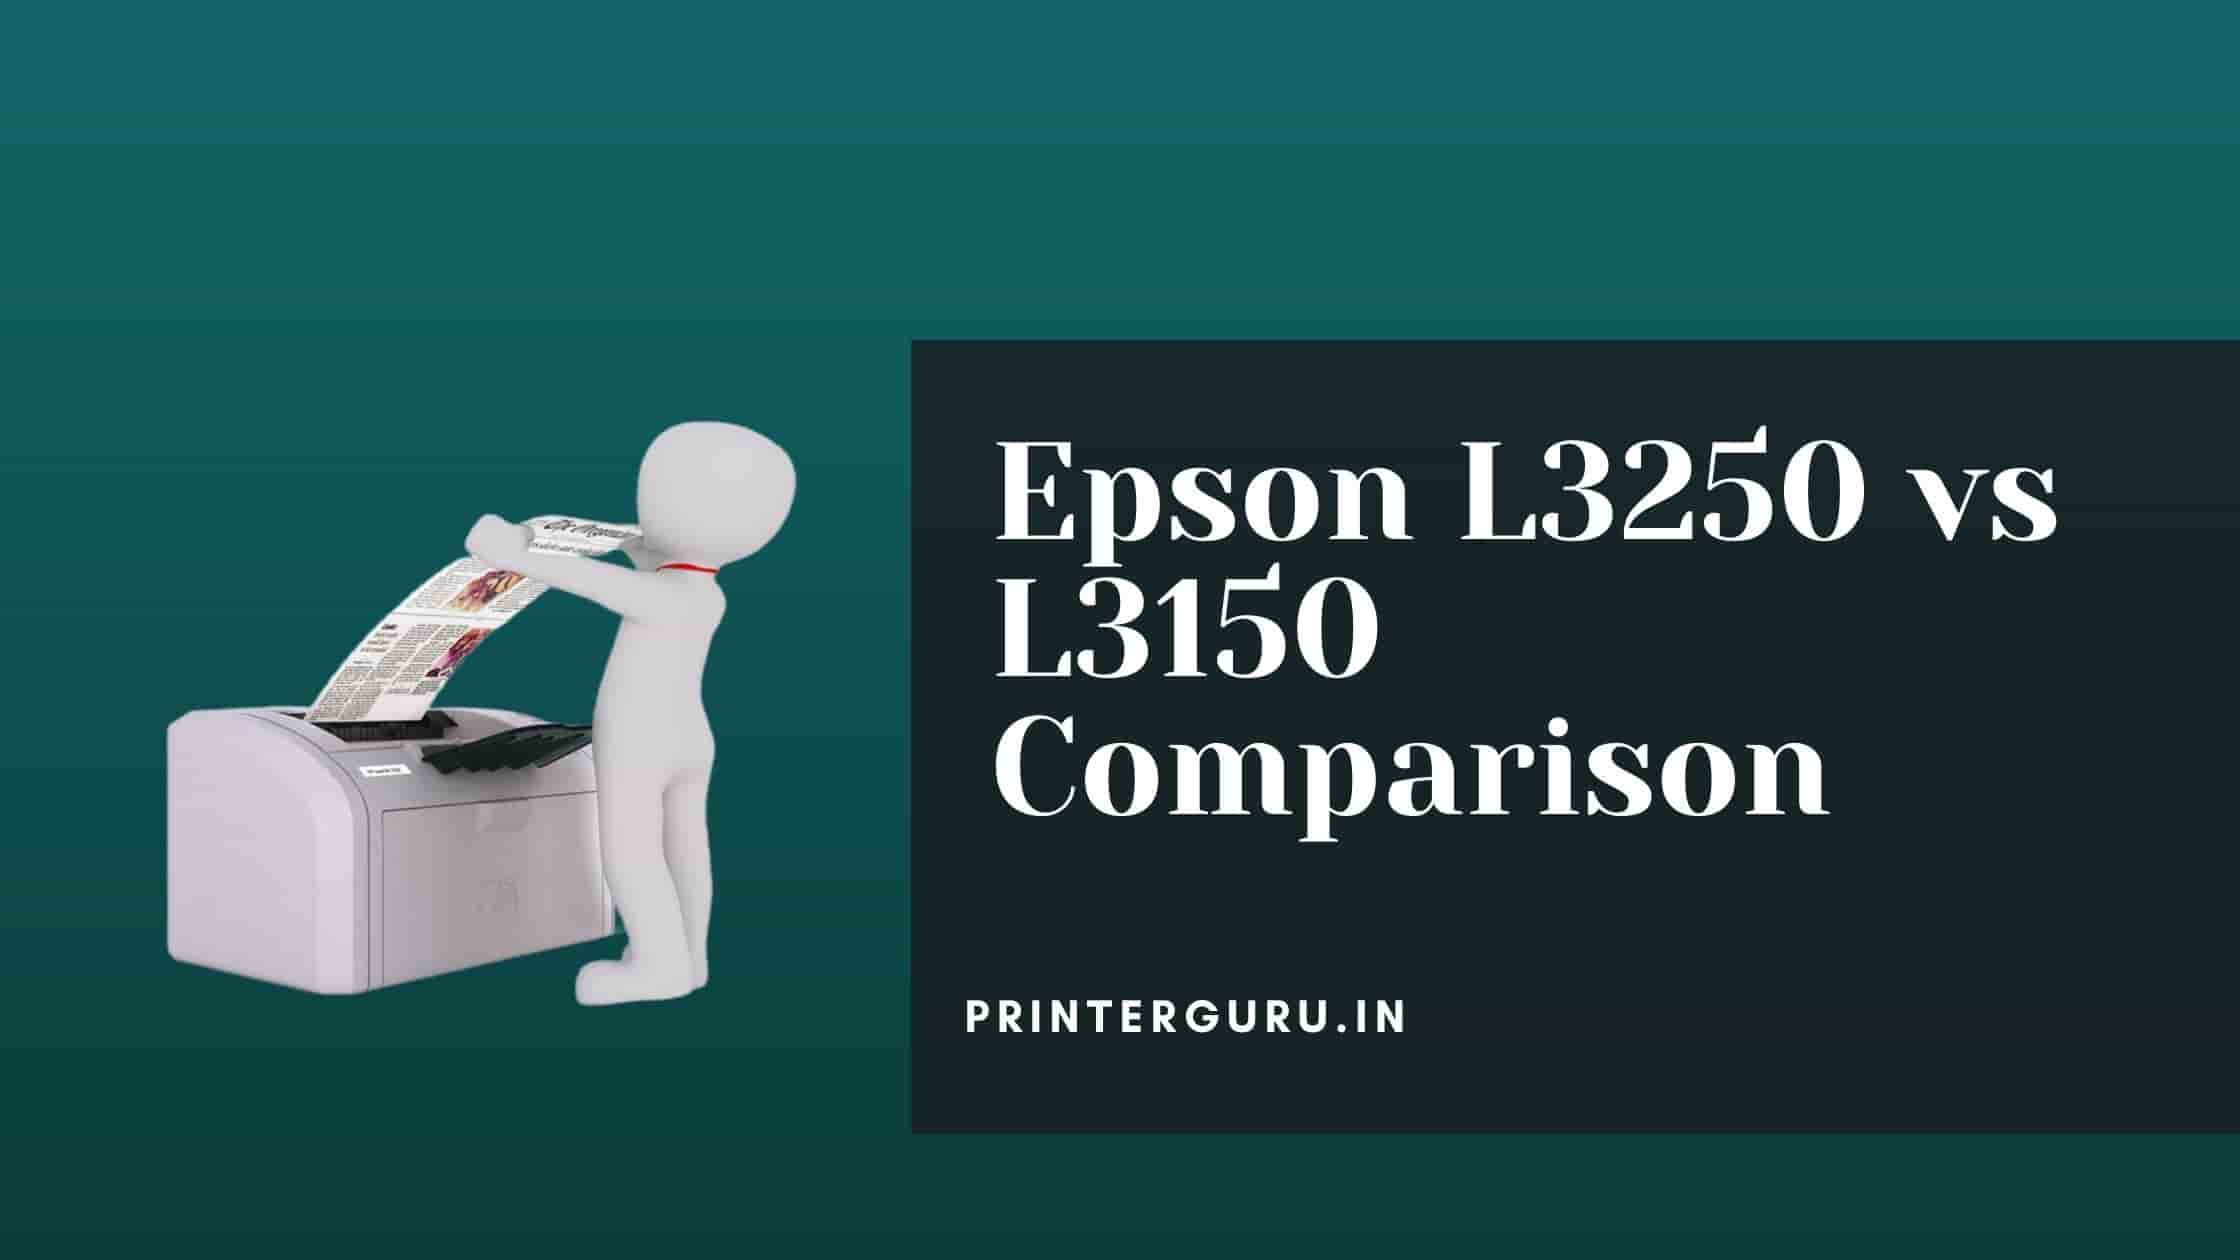 Epson l3250